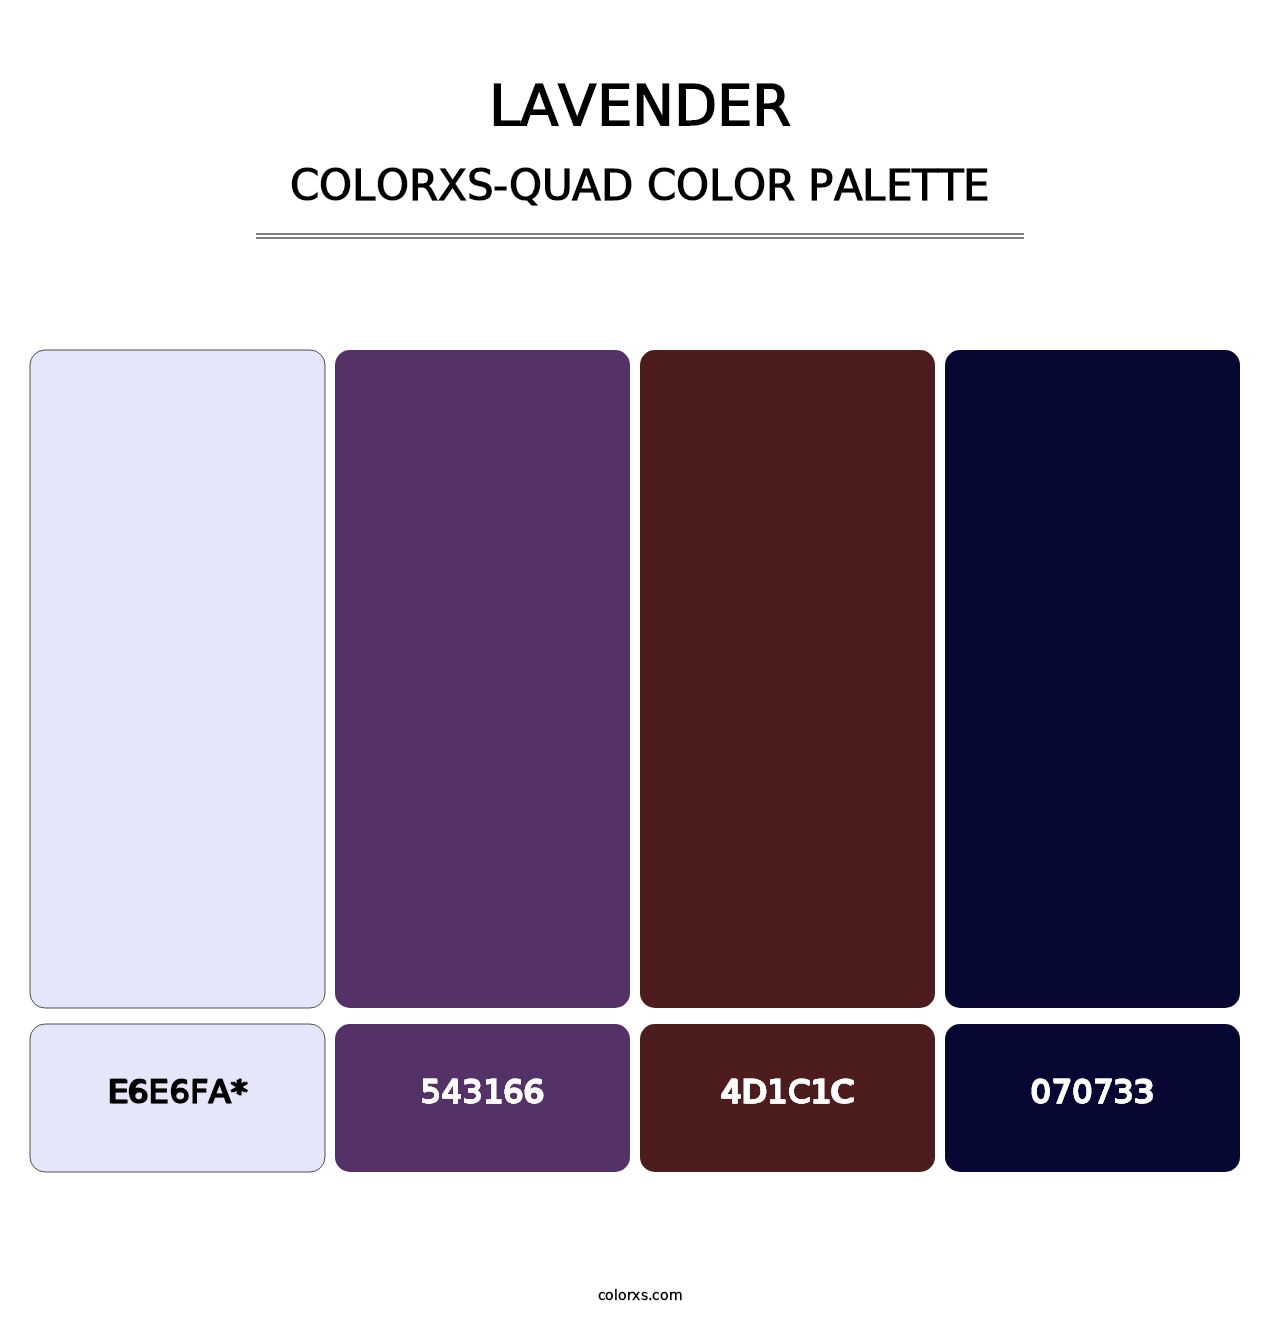 Lavender - Colorxs Quad Palette